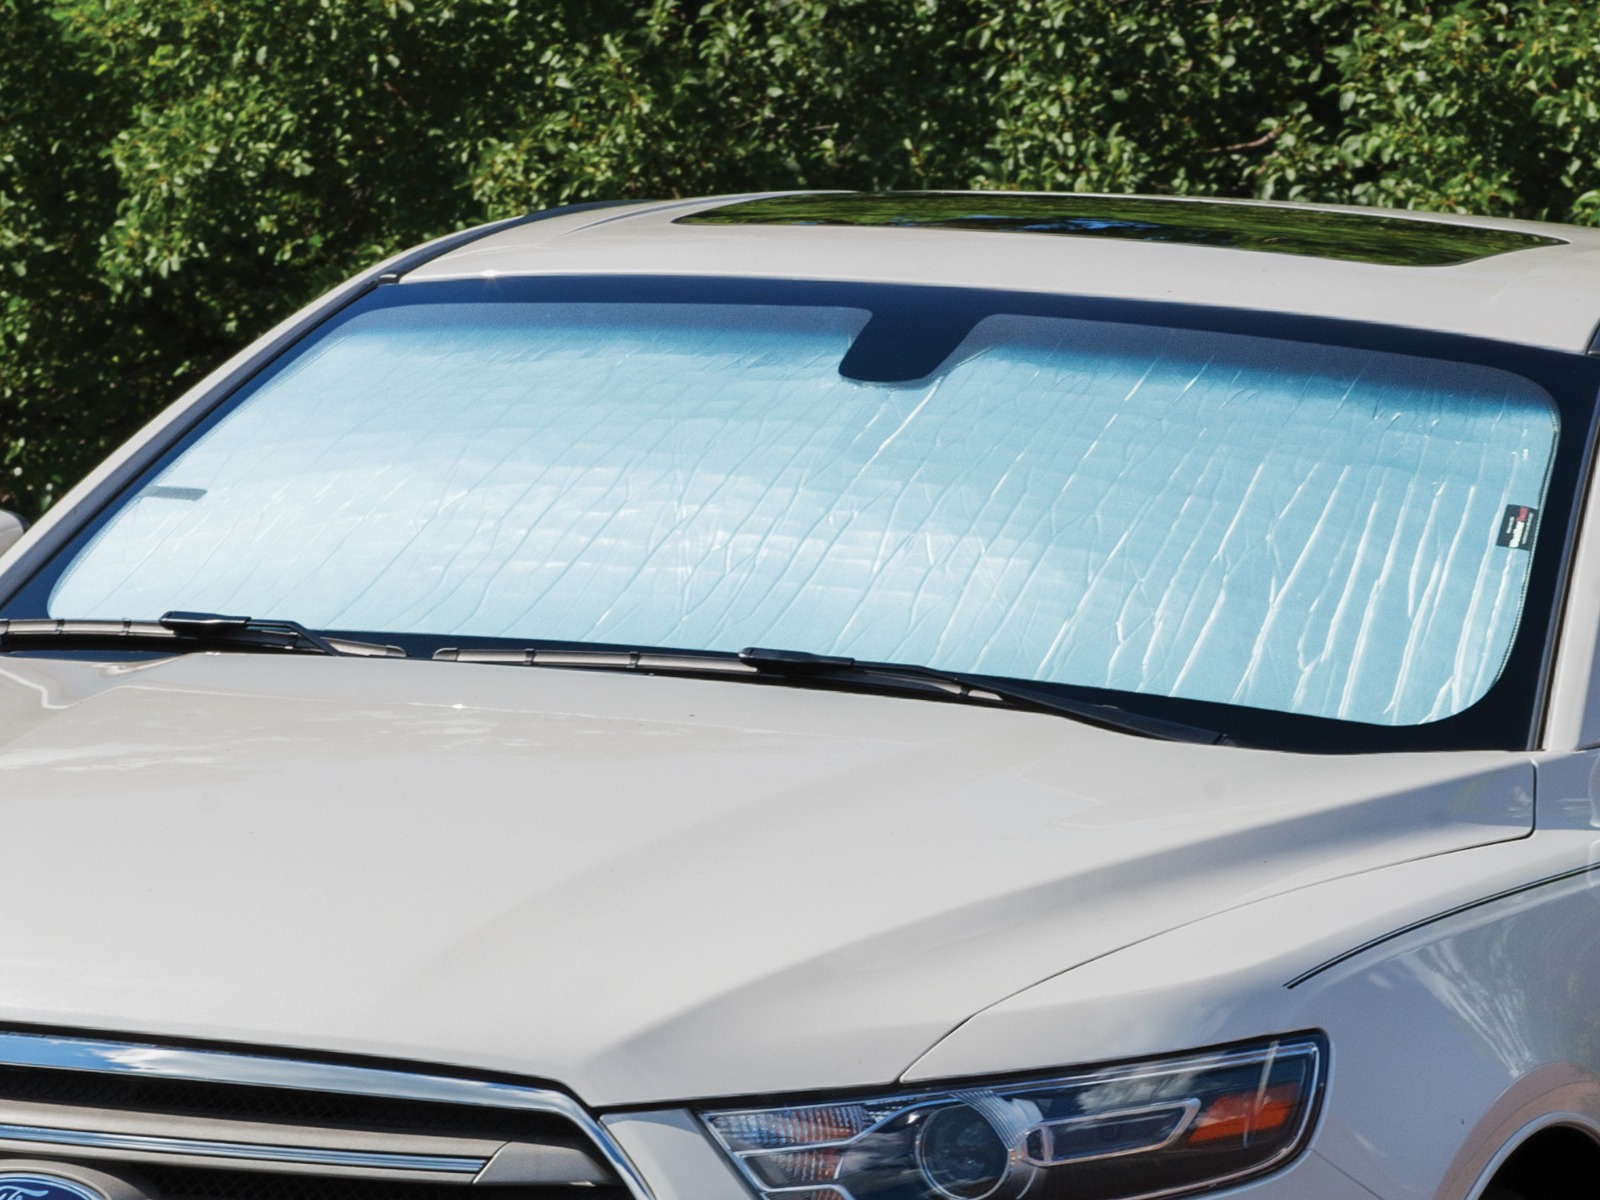 KangJZ UV-blockierender Sonnenschutz, innerhalb der Auto-Windschutzscheibe  Autofenster hängen außerhalb der Sonnenblende Sonnenschutz  Wärmeisolierender Schutz der Privatsphäre Sonnenschutz praktisch:  : Auto & Motorrad